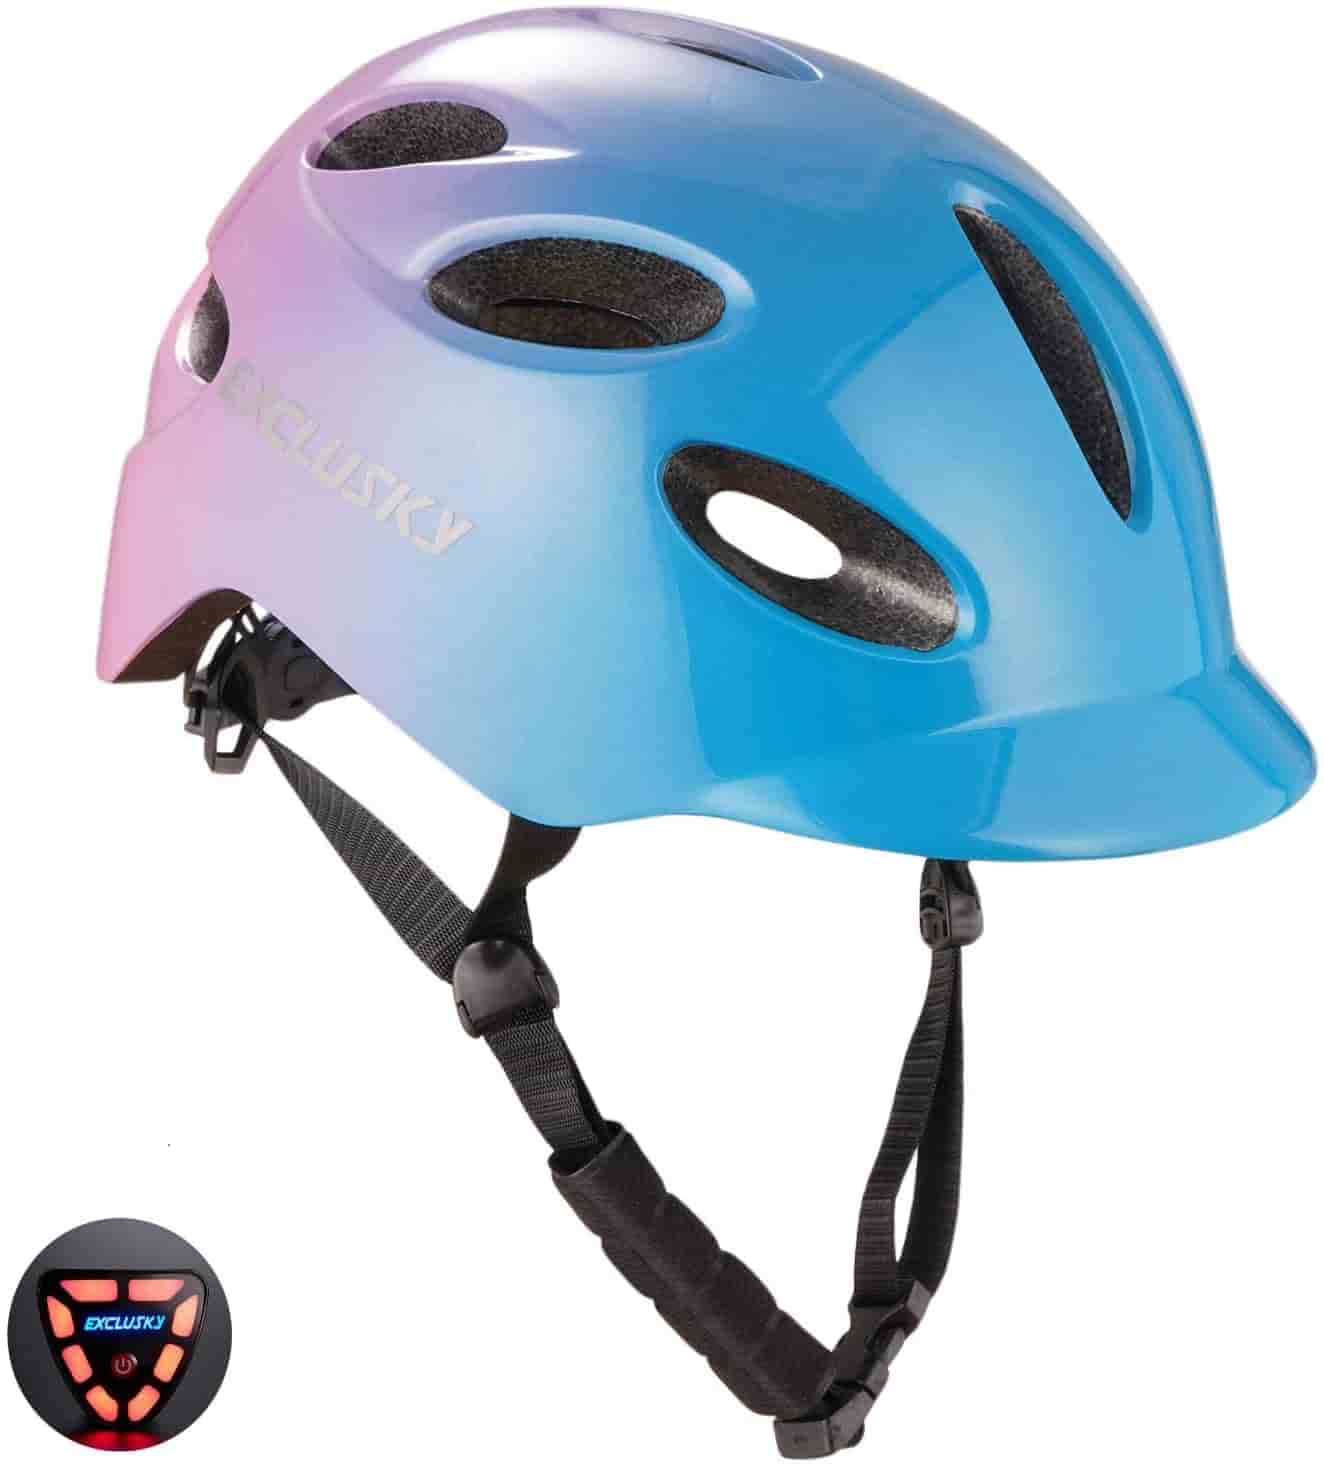 Exclusky Adult Bike Helmet